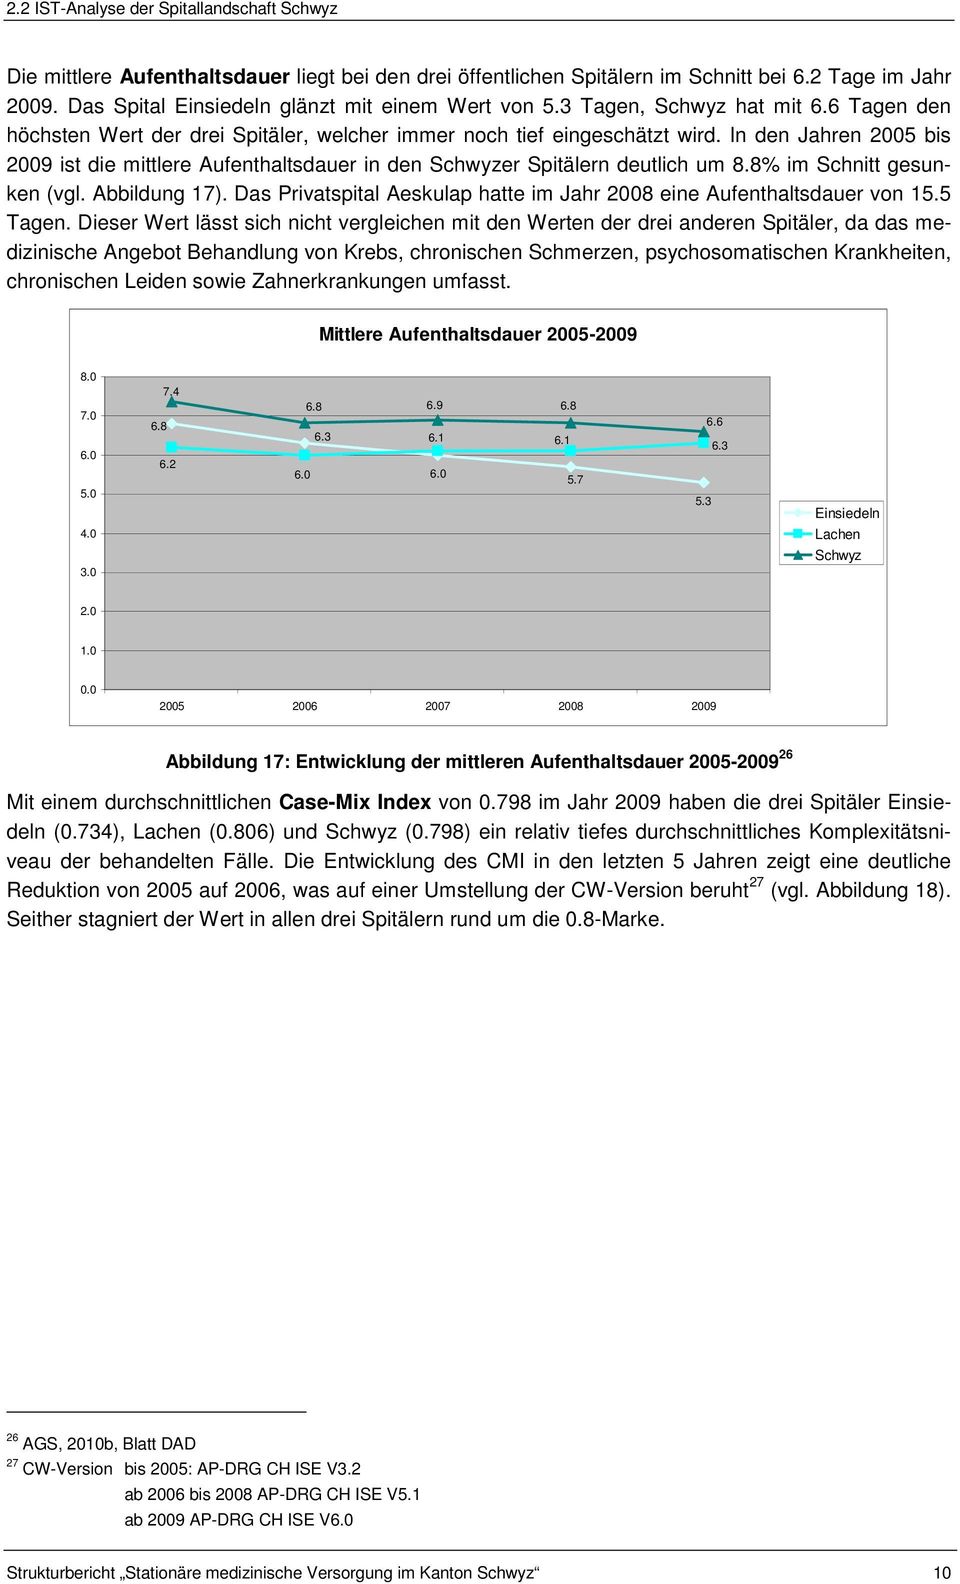 In den Jahren 2005 bis 2009 ist die mittlere Aufenthaltsdauer in den Schwyzer Spitälern deutlich um 8.8% im Schnitt gesunken (vgl. Abbildung 17).